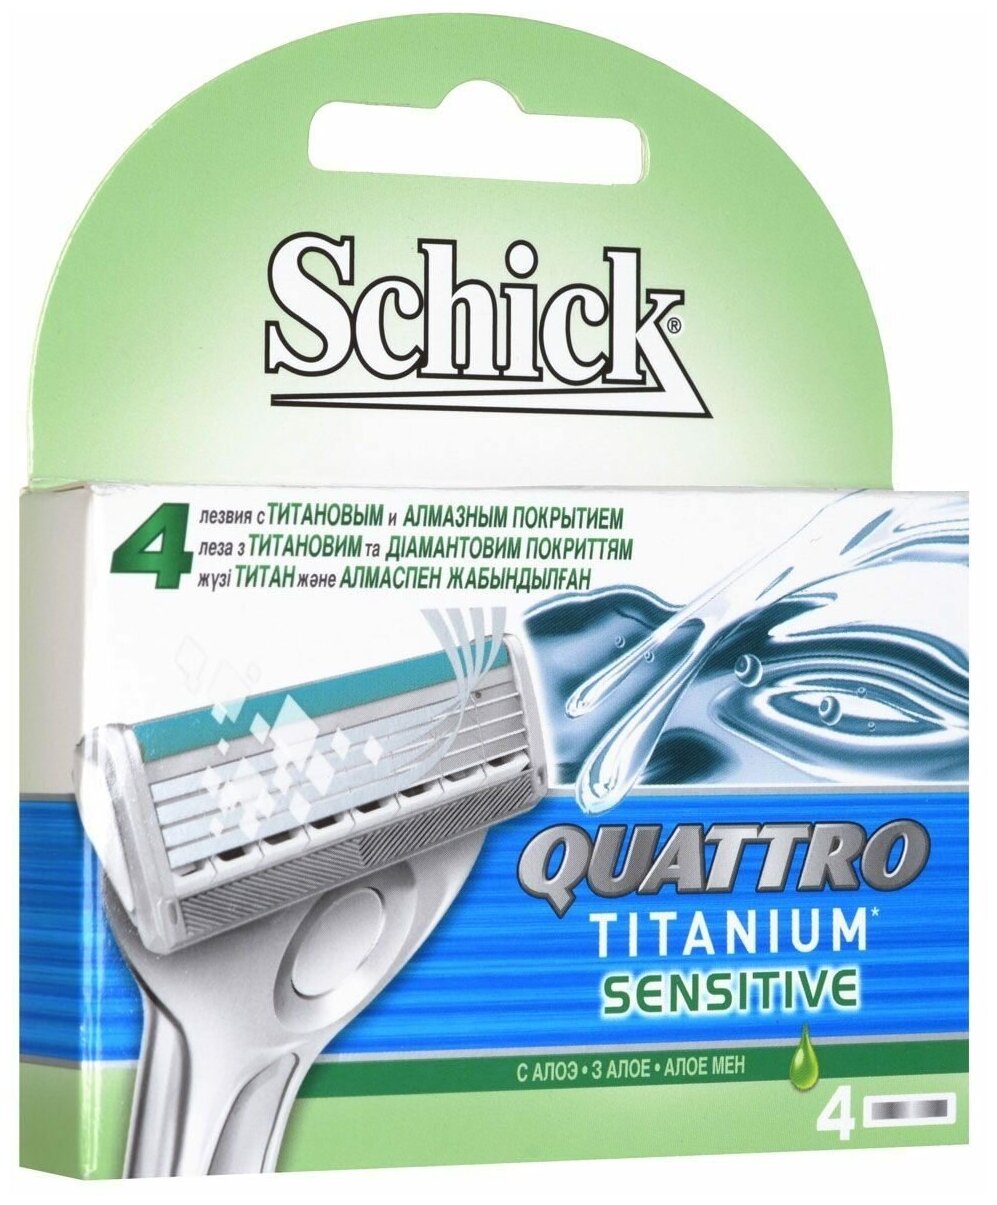 Сменные кассеты для бритья Schick Quattro Titanium Sensitive, 4 шт